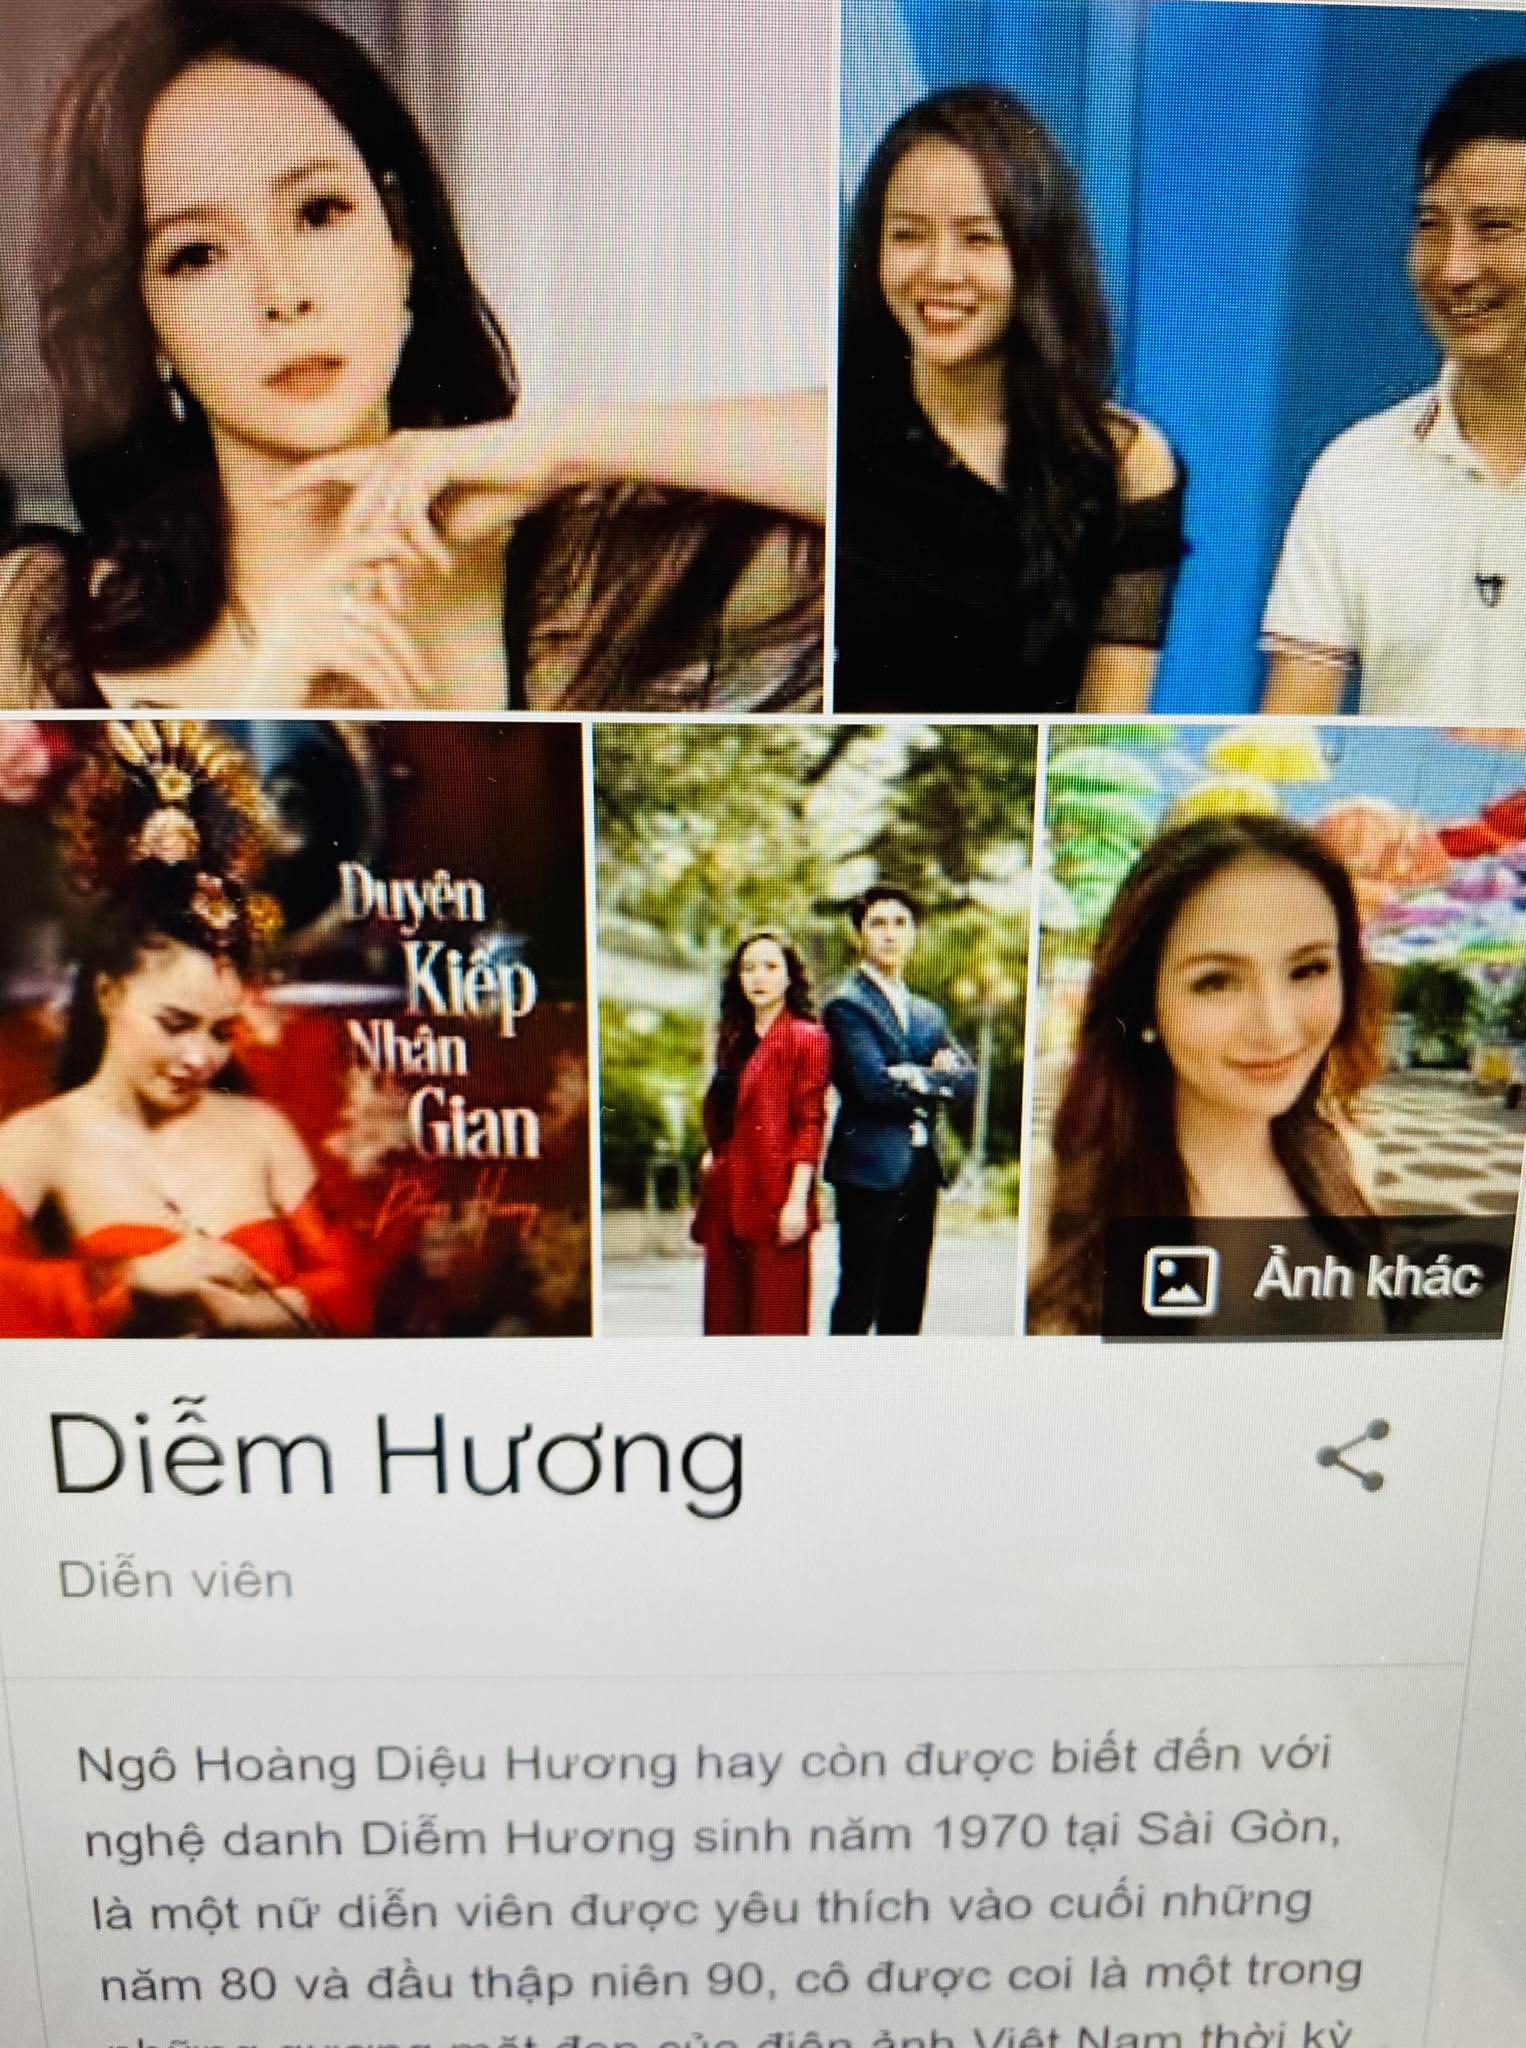 Thông tin về diễn viên Diễm Hương bị nhầm lẫn trên công cụ tìm kiếm